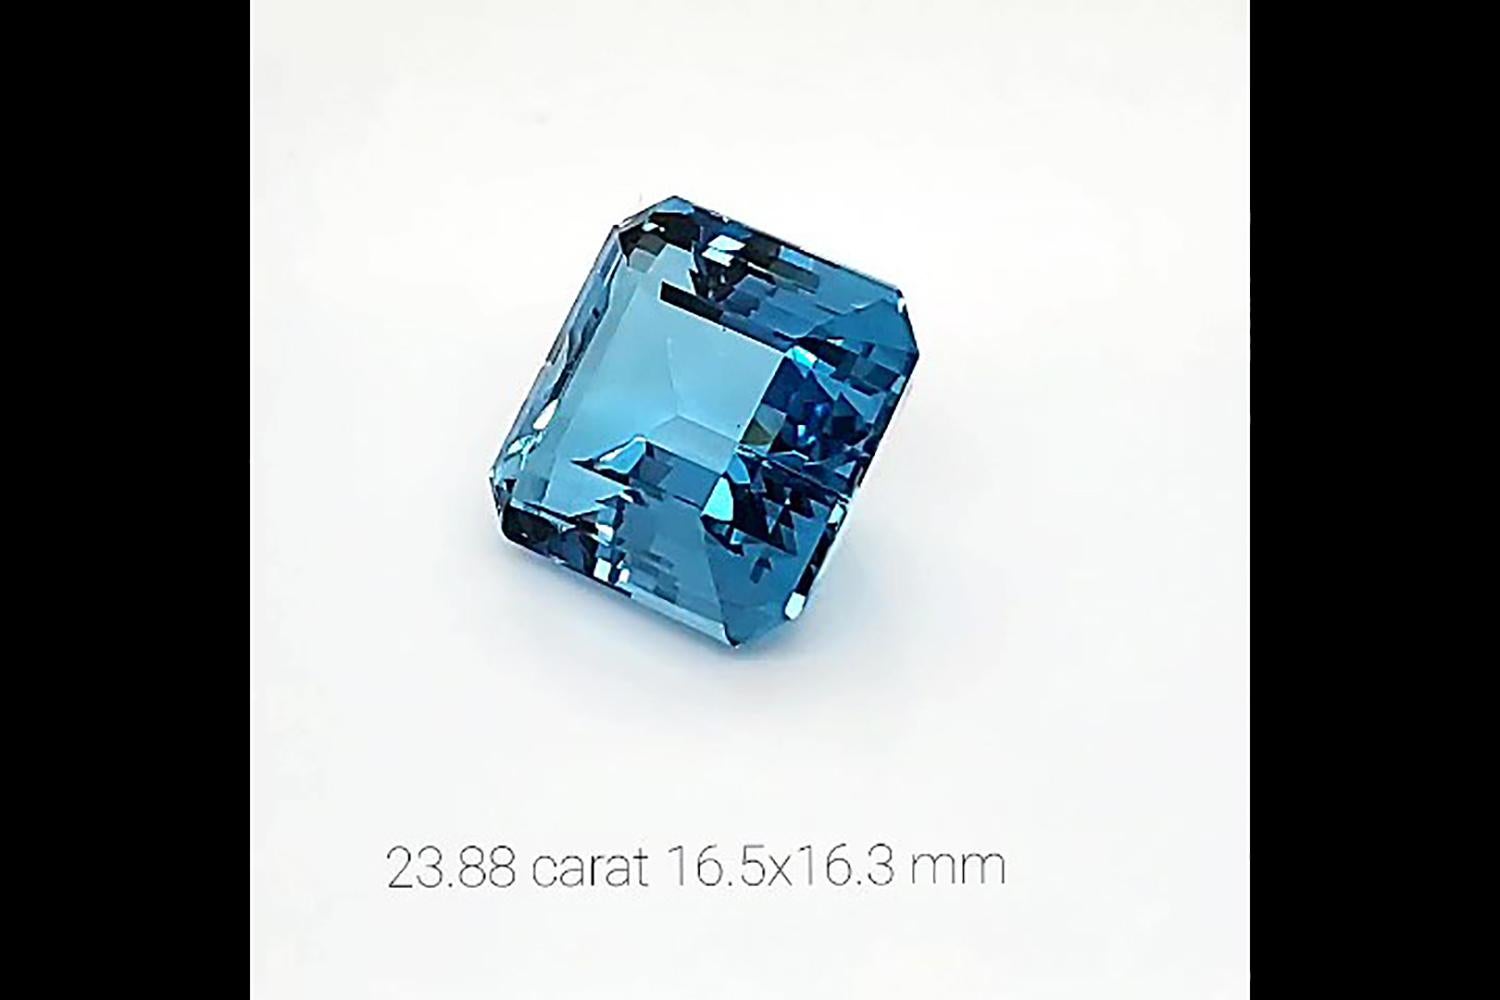 23.88 Karat natürlicher blauer Aquamarin im Ascher-Schliff, von hoher Qualität, intensiv blau, transparentes Mineral ohne Einschlüsse, perfekte Wahl für Sammler oder um ein individuelles, einzigartiges Schmuckstück damit zu gestalten.
Wir sind